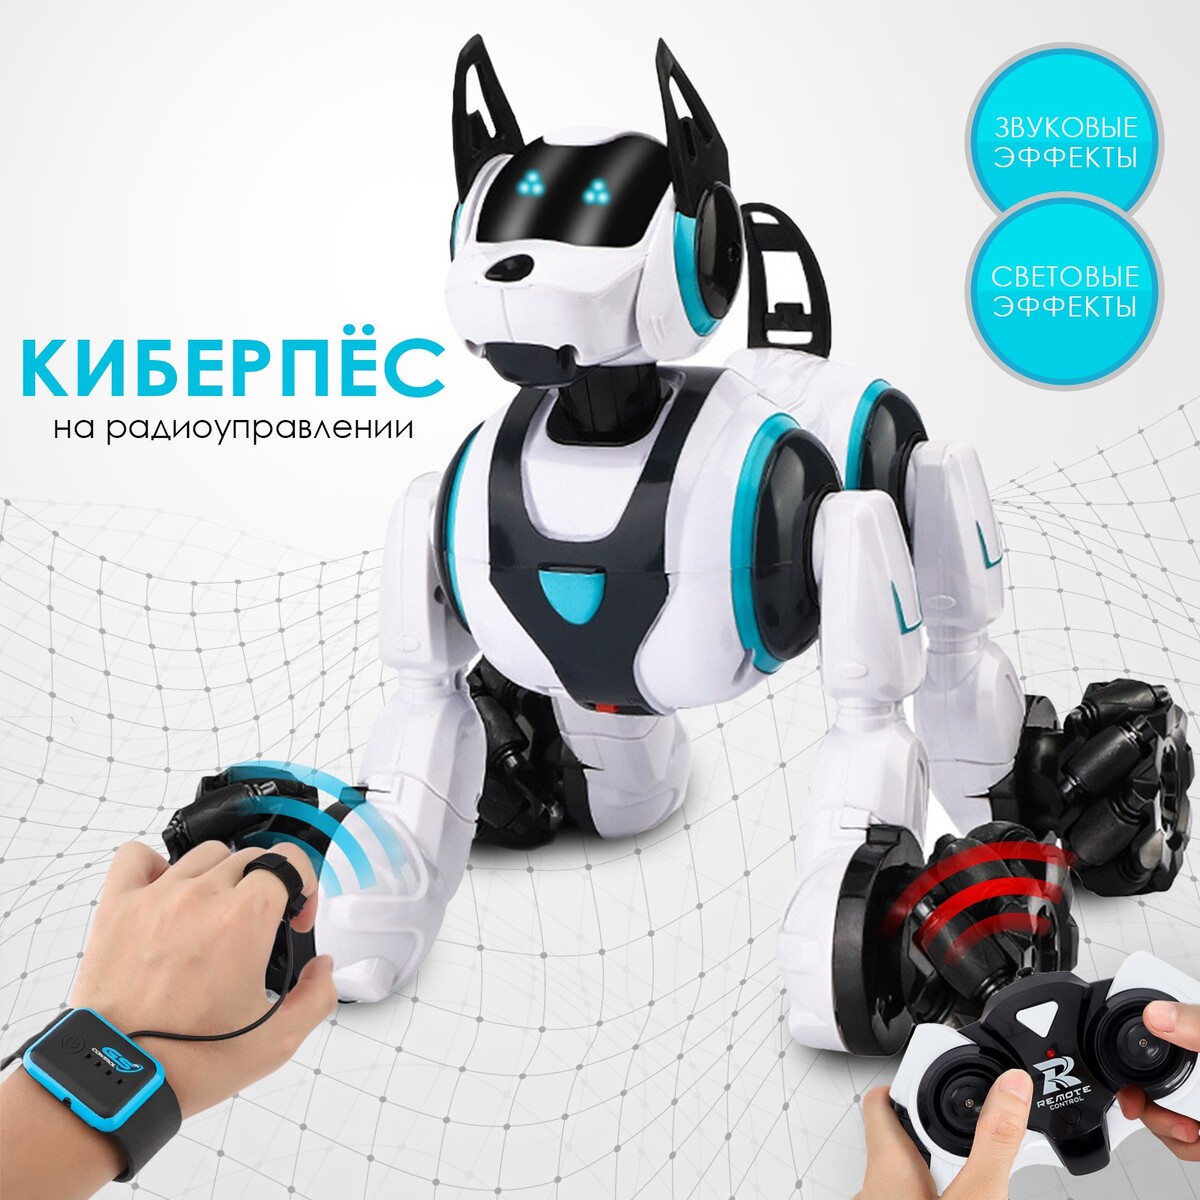 фото Робот собака stunt, на пульте управления, интерактивный: звук, свет, на аккумуляторе, белый no brand